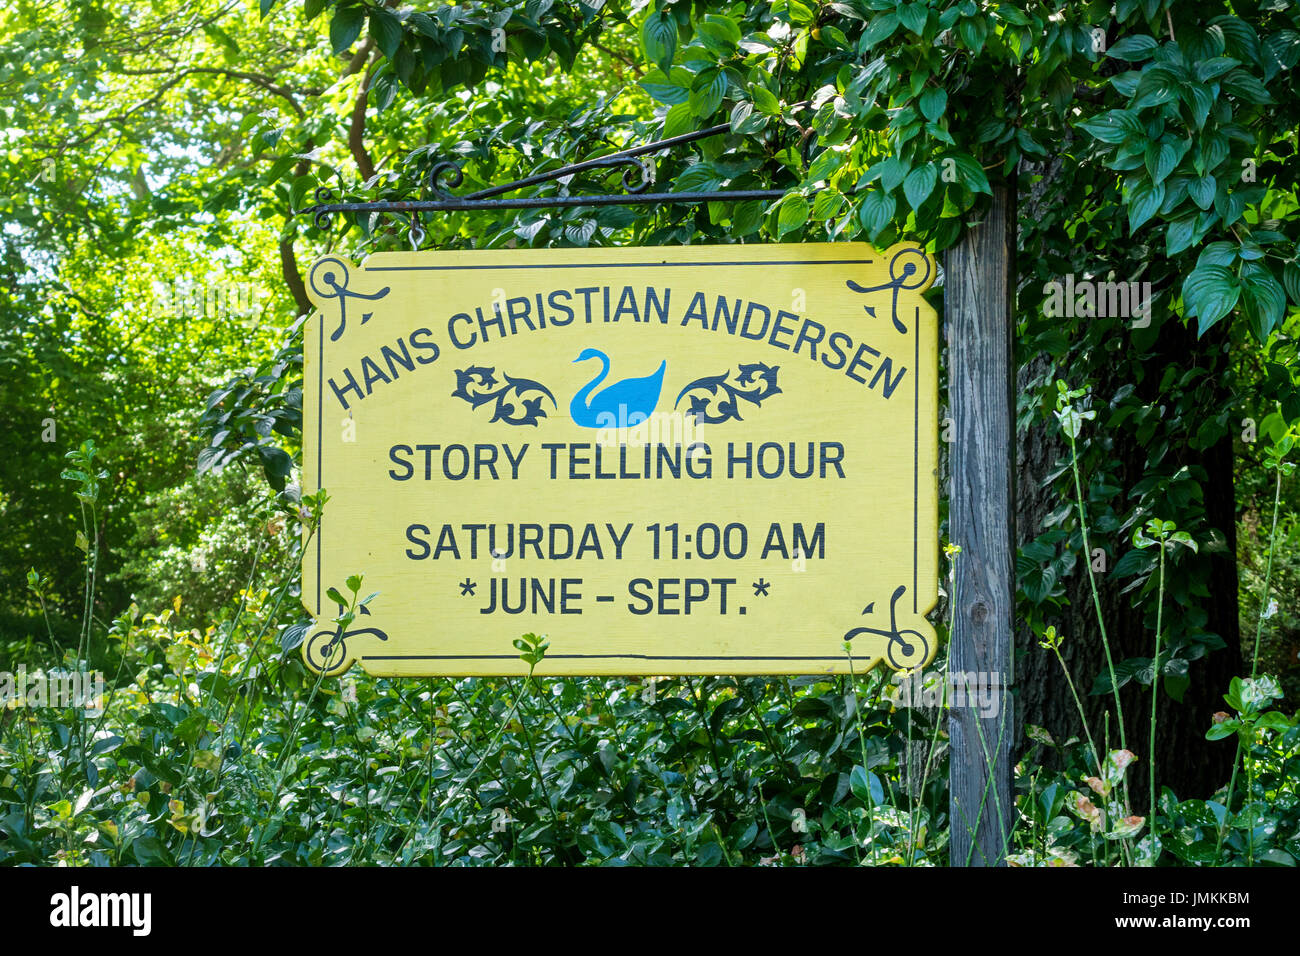 Un signe dans Central Park d'afficher l'heure réservée à l'hebdomadaire Hans Christian Andersen Contes Heure Banque D'Images